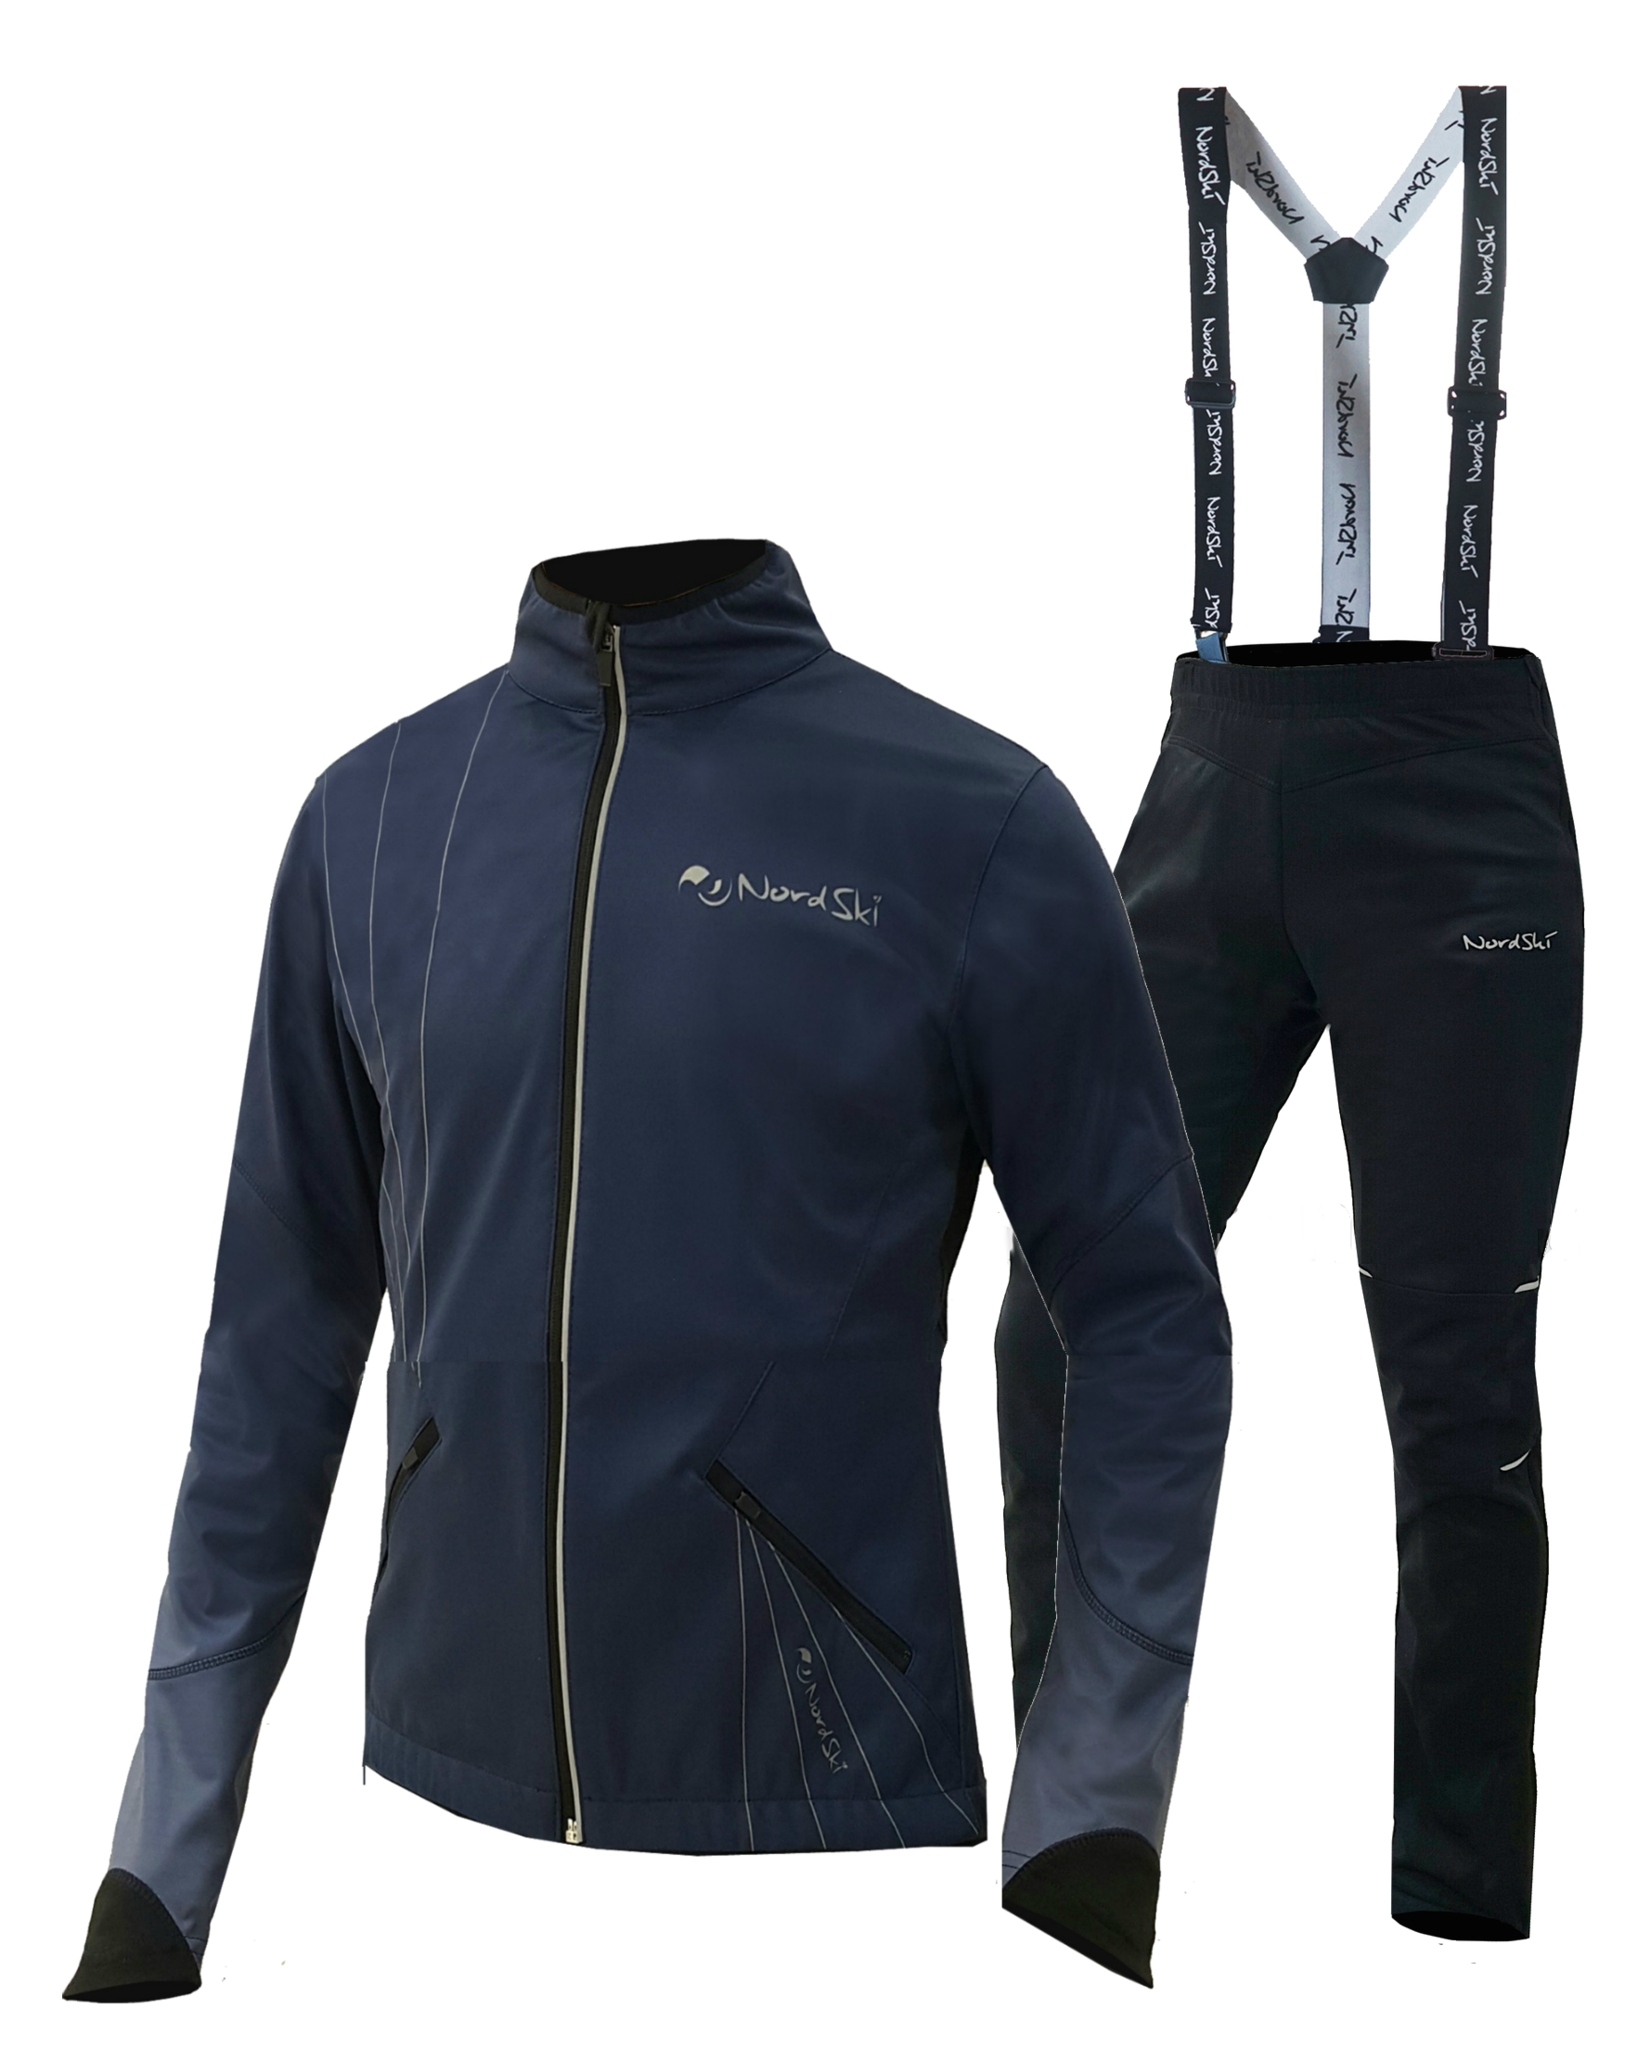 Разминочный костюм для лыжников. Костюм Nordski Premium. Лыжный разминочный костюм Nordski. Ski go разминочный костюм. Костюм Nordski nsm435900 Premium.